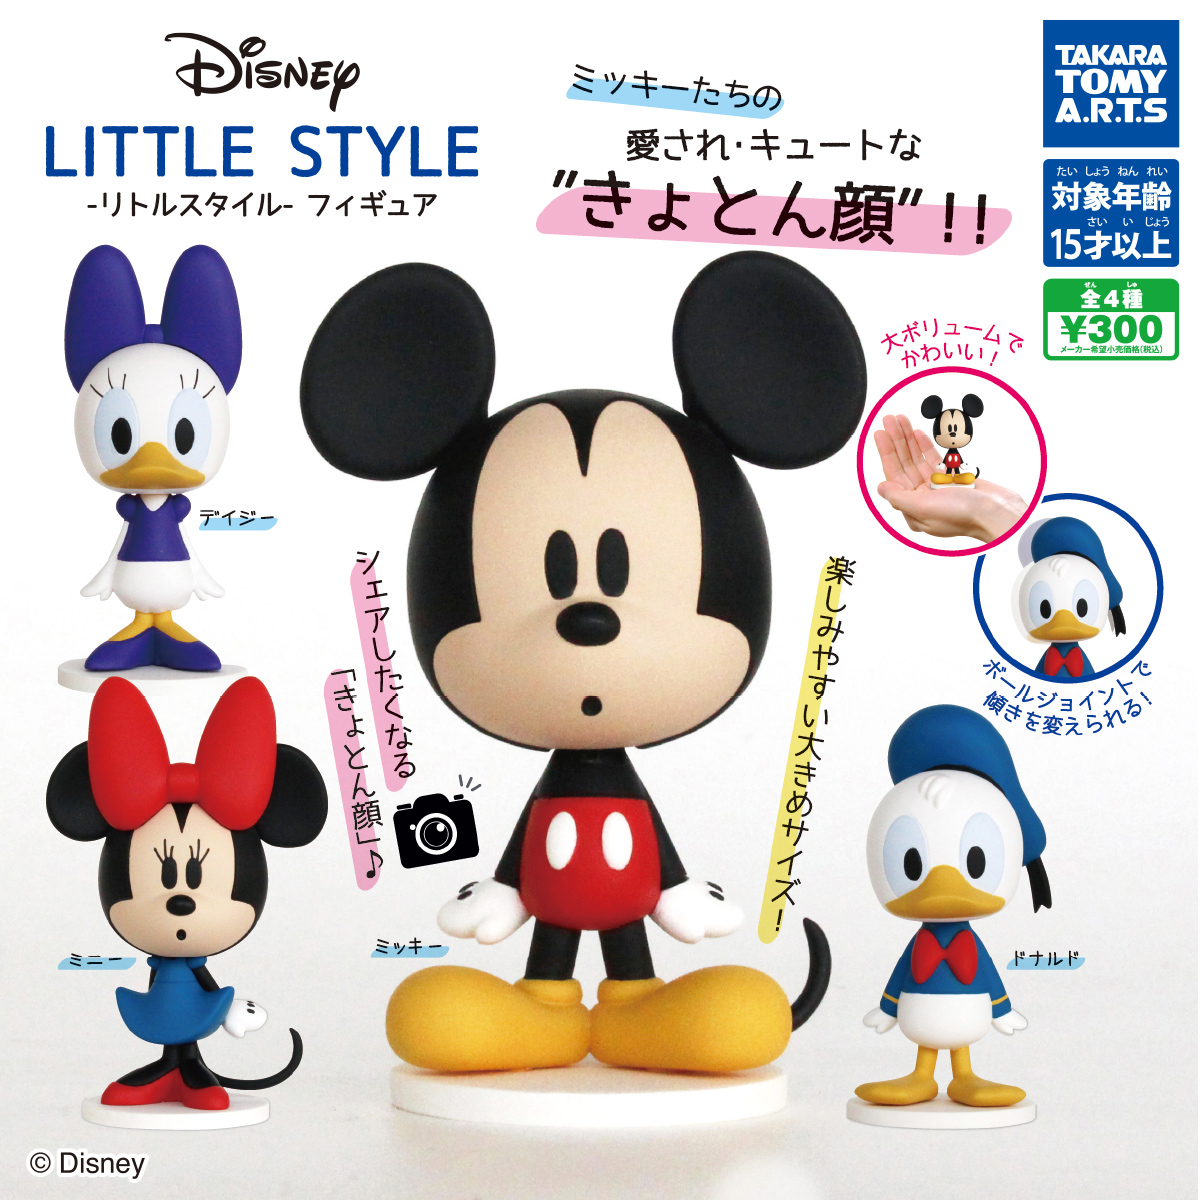 ディズニー Little Style リトルスタイル フィギュア 商品情報 タカラトミーアーツ